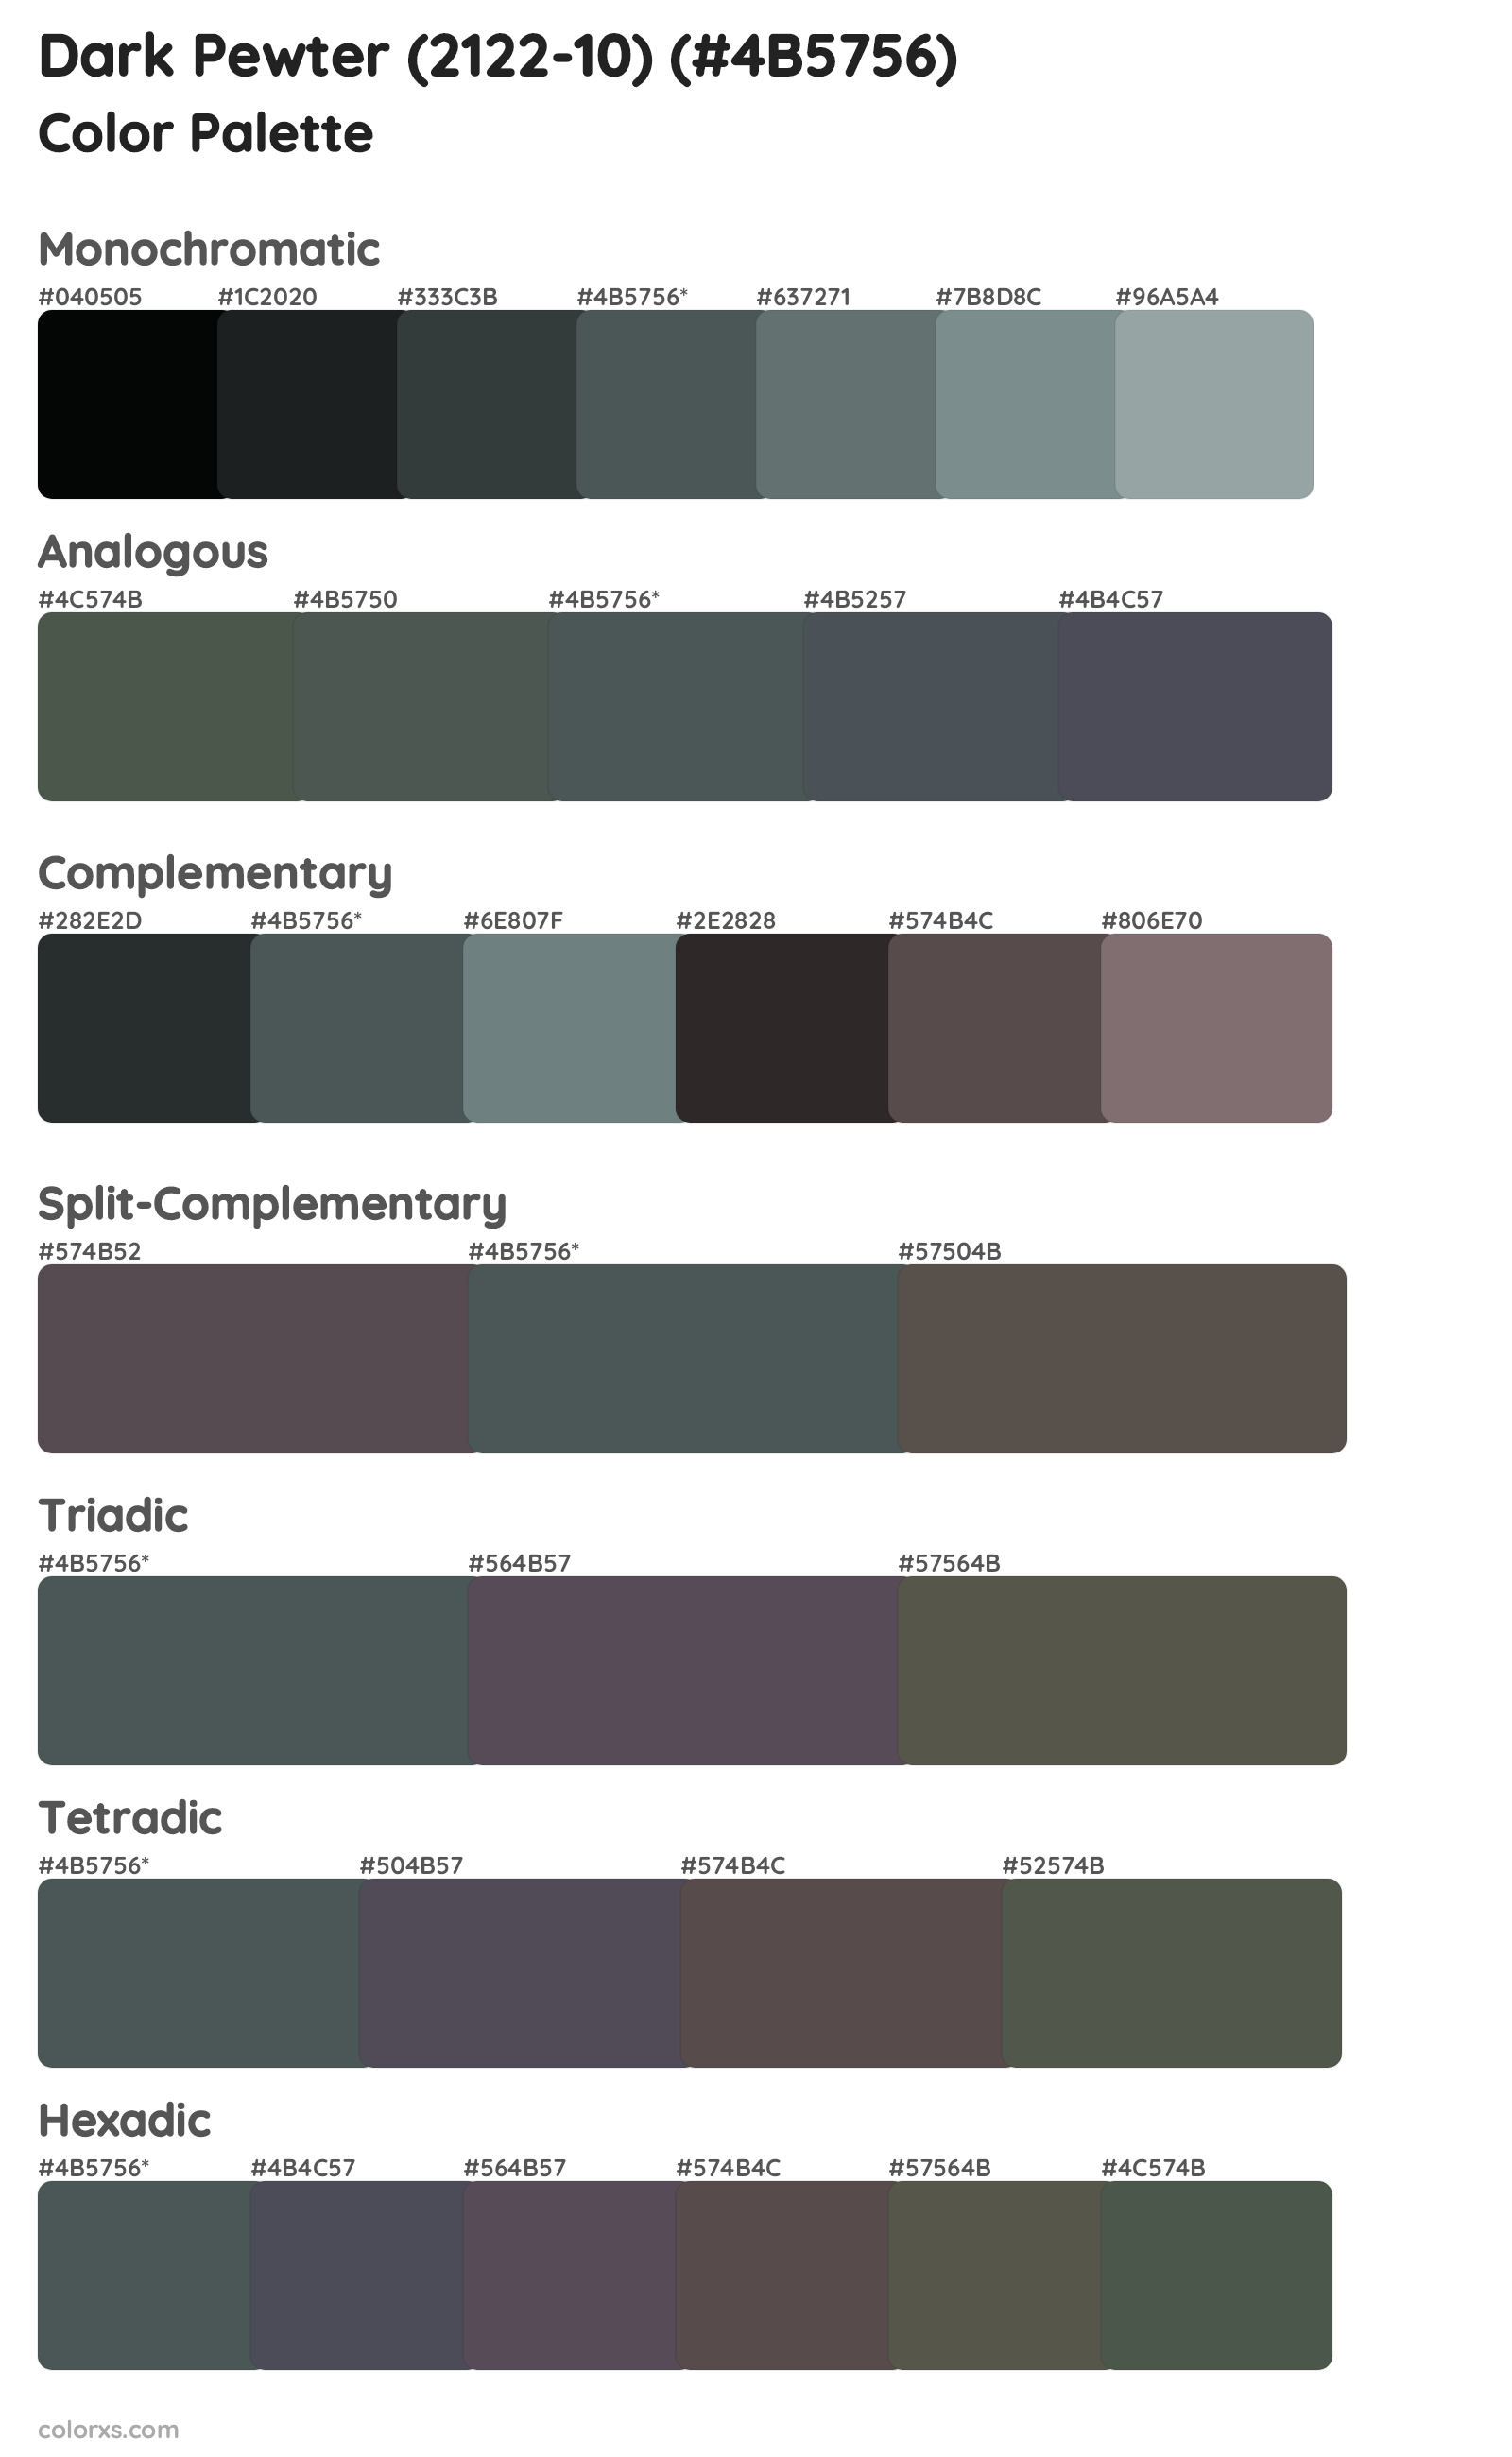 Dark Pewter (2122-10) Color Scheme Palettes